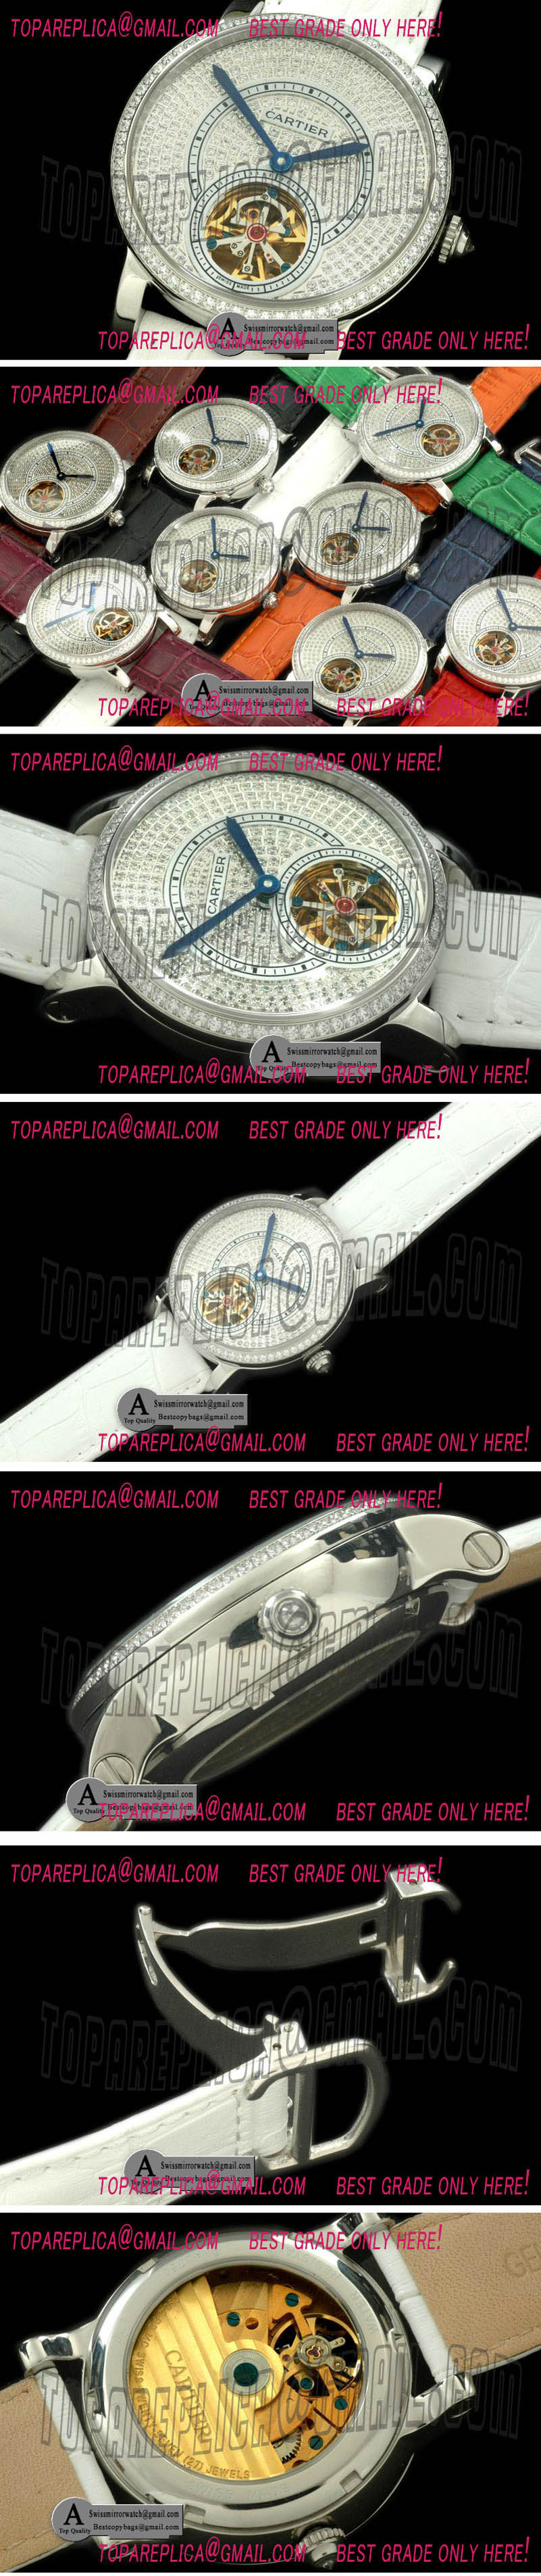 Cartier Ronde de Cartier Tourbillon SS Leather White Asian 2813 Replica Watches